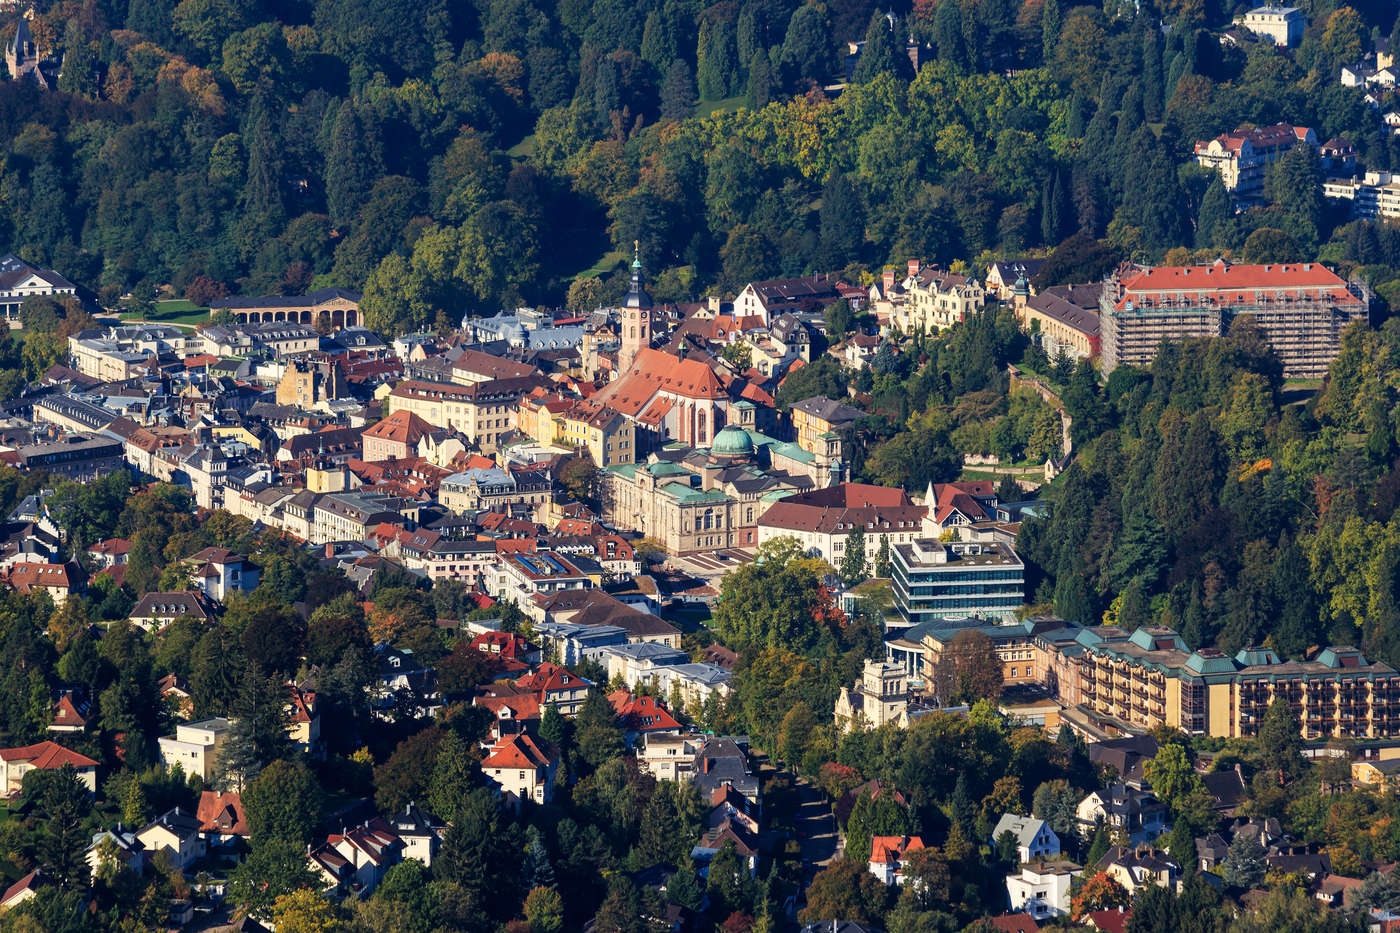 Temukan bagian Baden-Baden Anda.